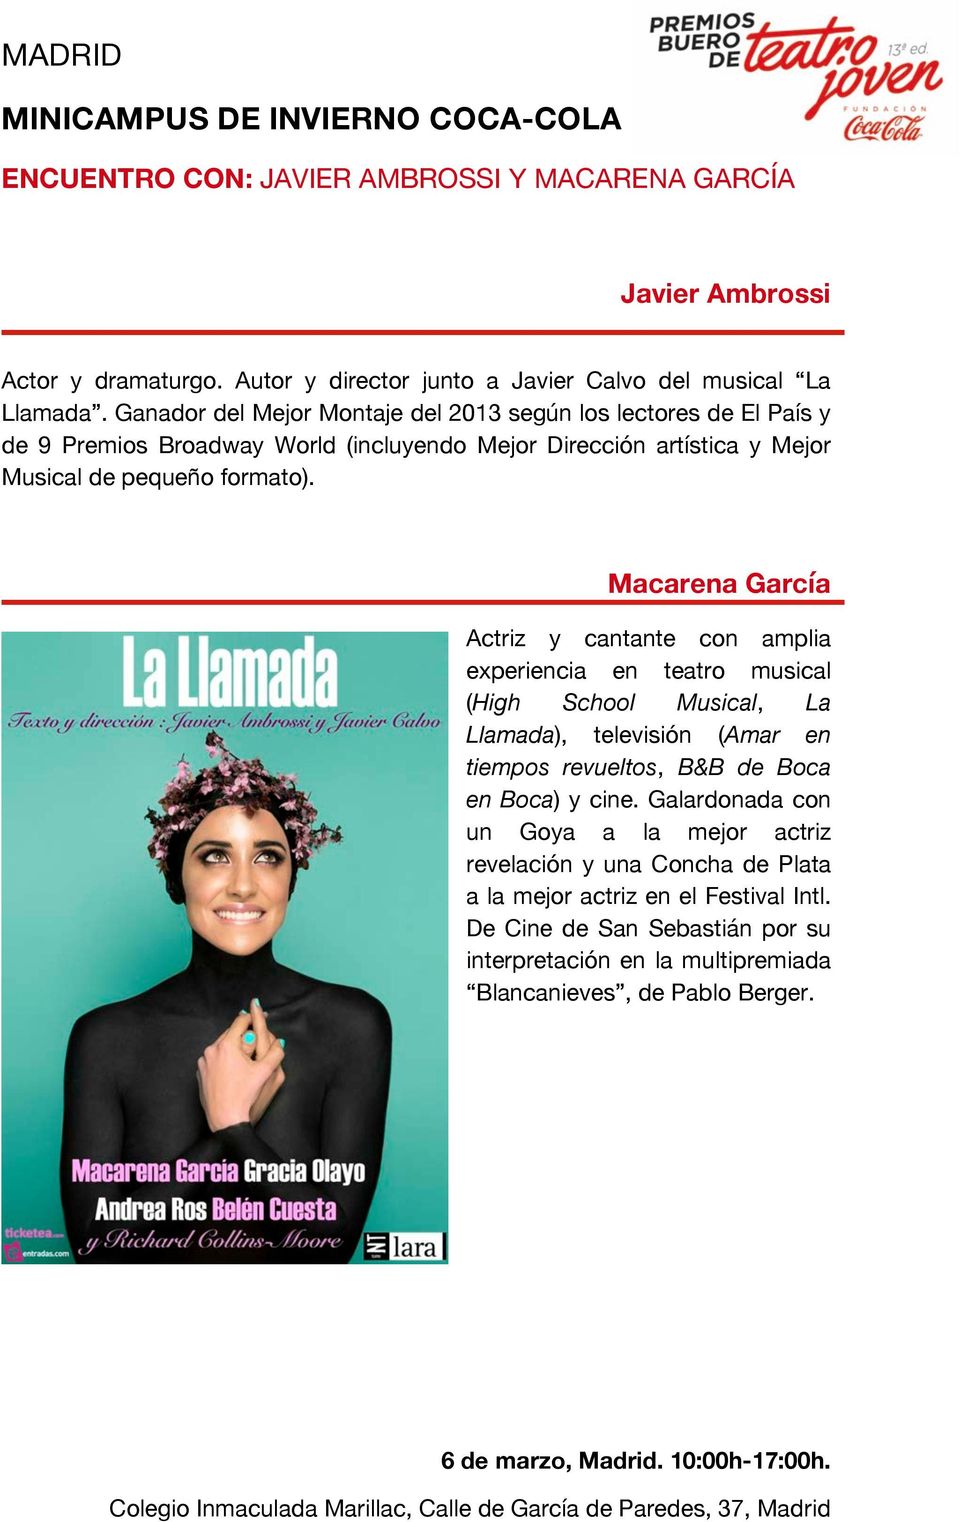 Macarena García Actriz y cantante con amplia experiencia en teatro musical (High School Musical, La Llamada), televisión (Amar en tiempos revueltos, B&B de Boca en Boca) y cine.